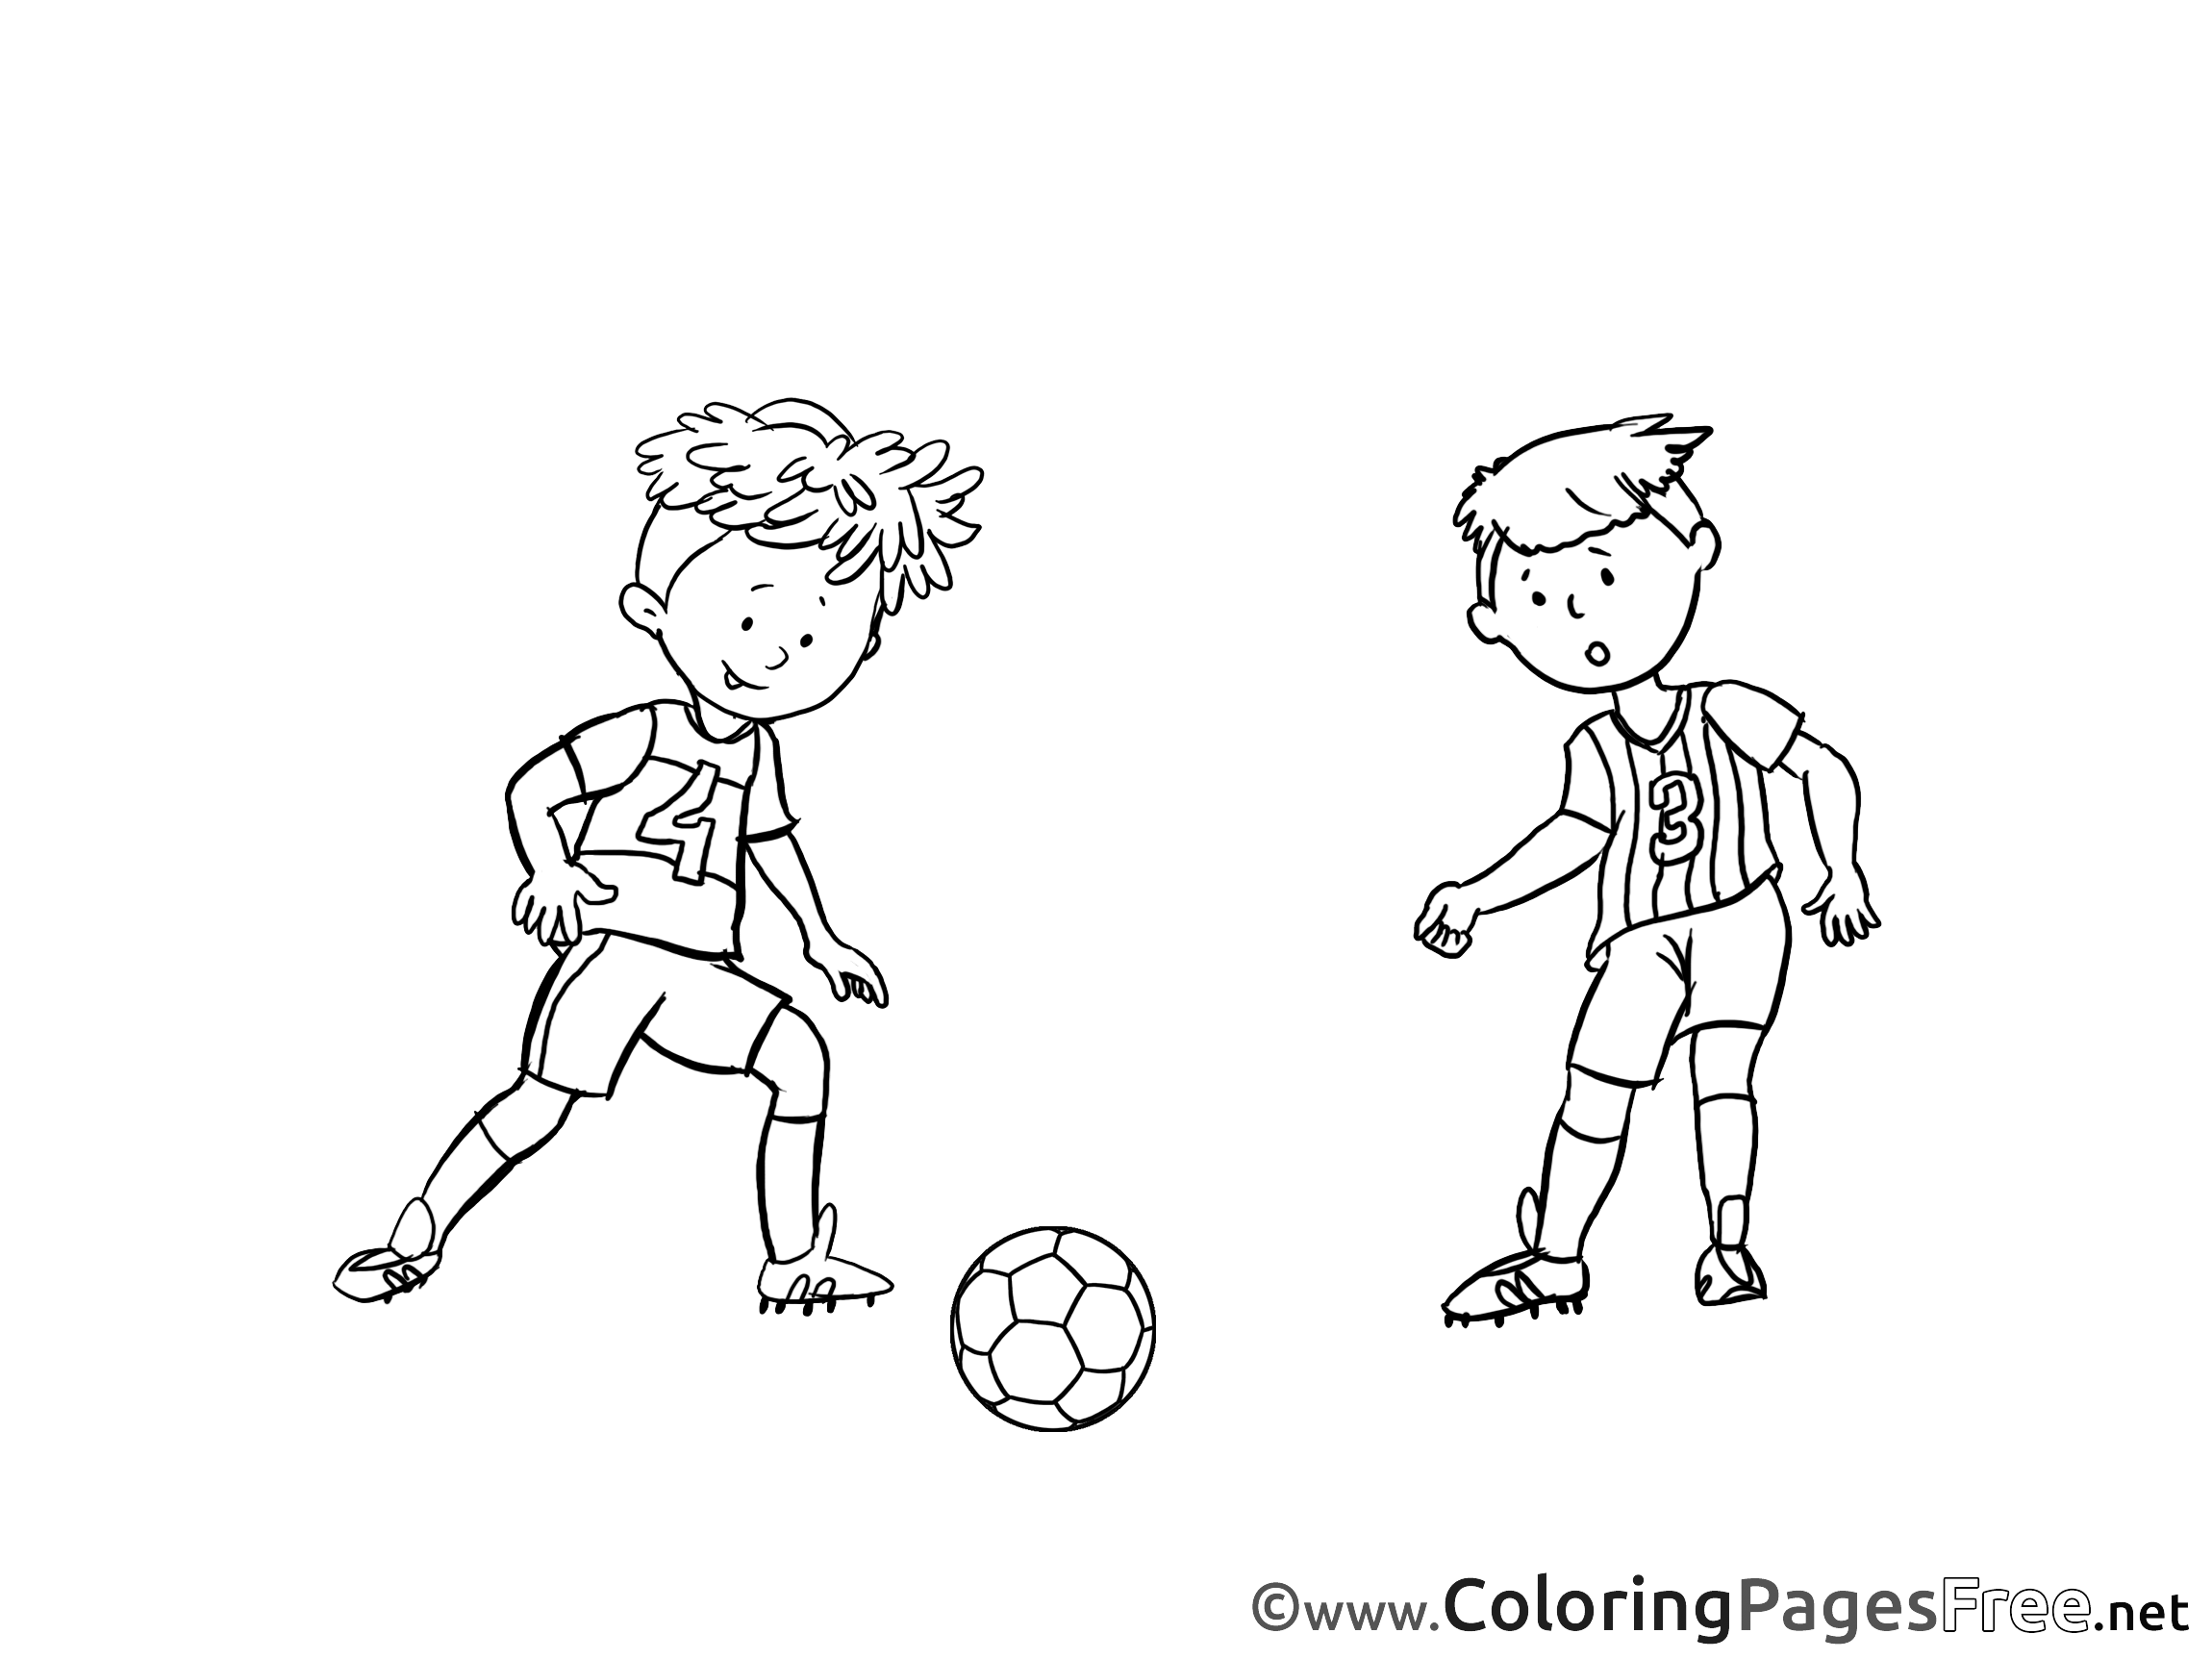 Игры нарисованный мальчик. Рисунок детей играющих в футбол. Раскраска игра в футбол. Рисунок мальчиков играющих в футбол. Футбол рисунок карандашом.